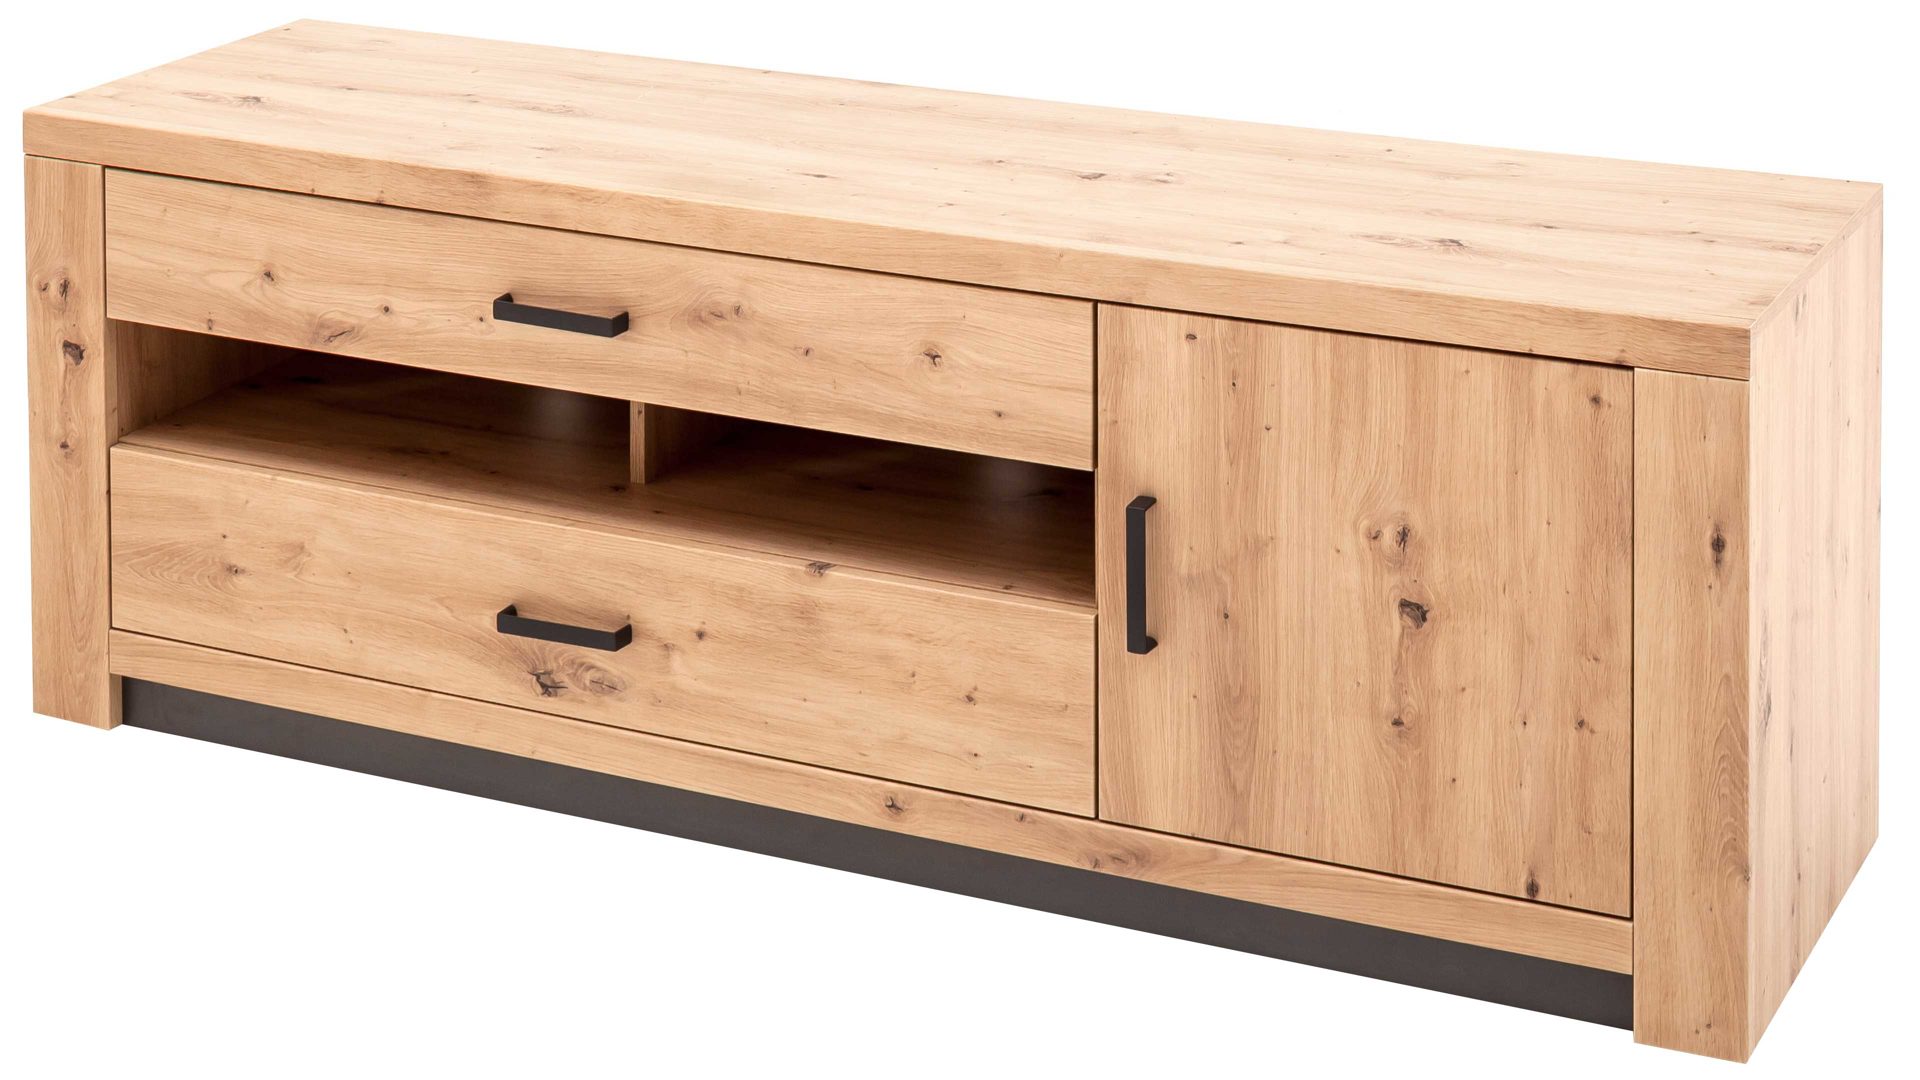 Lowboard Mca furniture aus Holz in Holzfarben Wohnprogramm Brüssel – Medien-Lowboard Balkeneiche & Anthrazit – eine Tür, zwei Schubladen